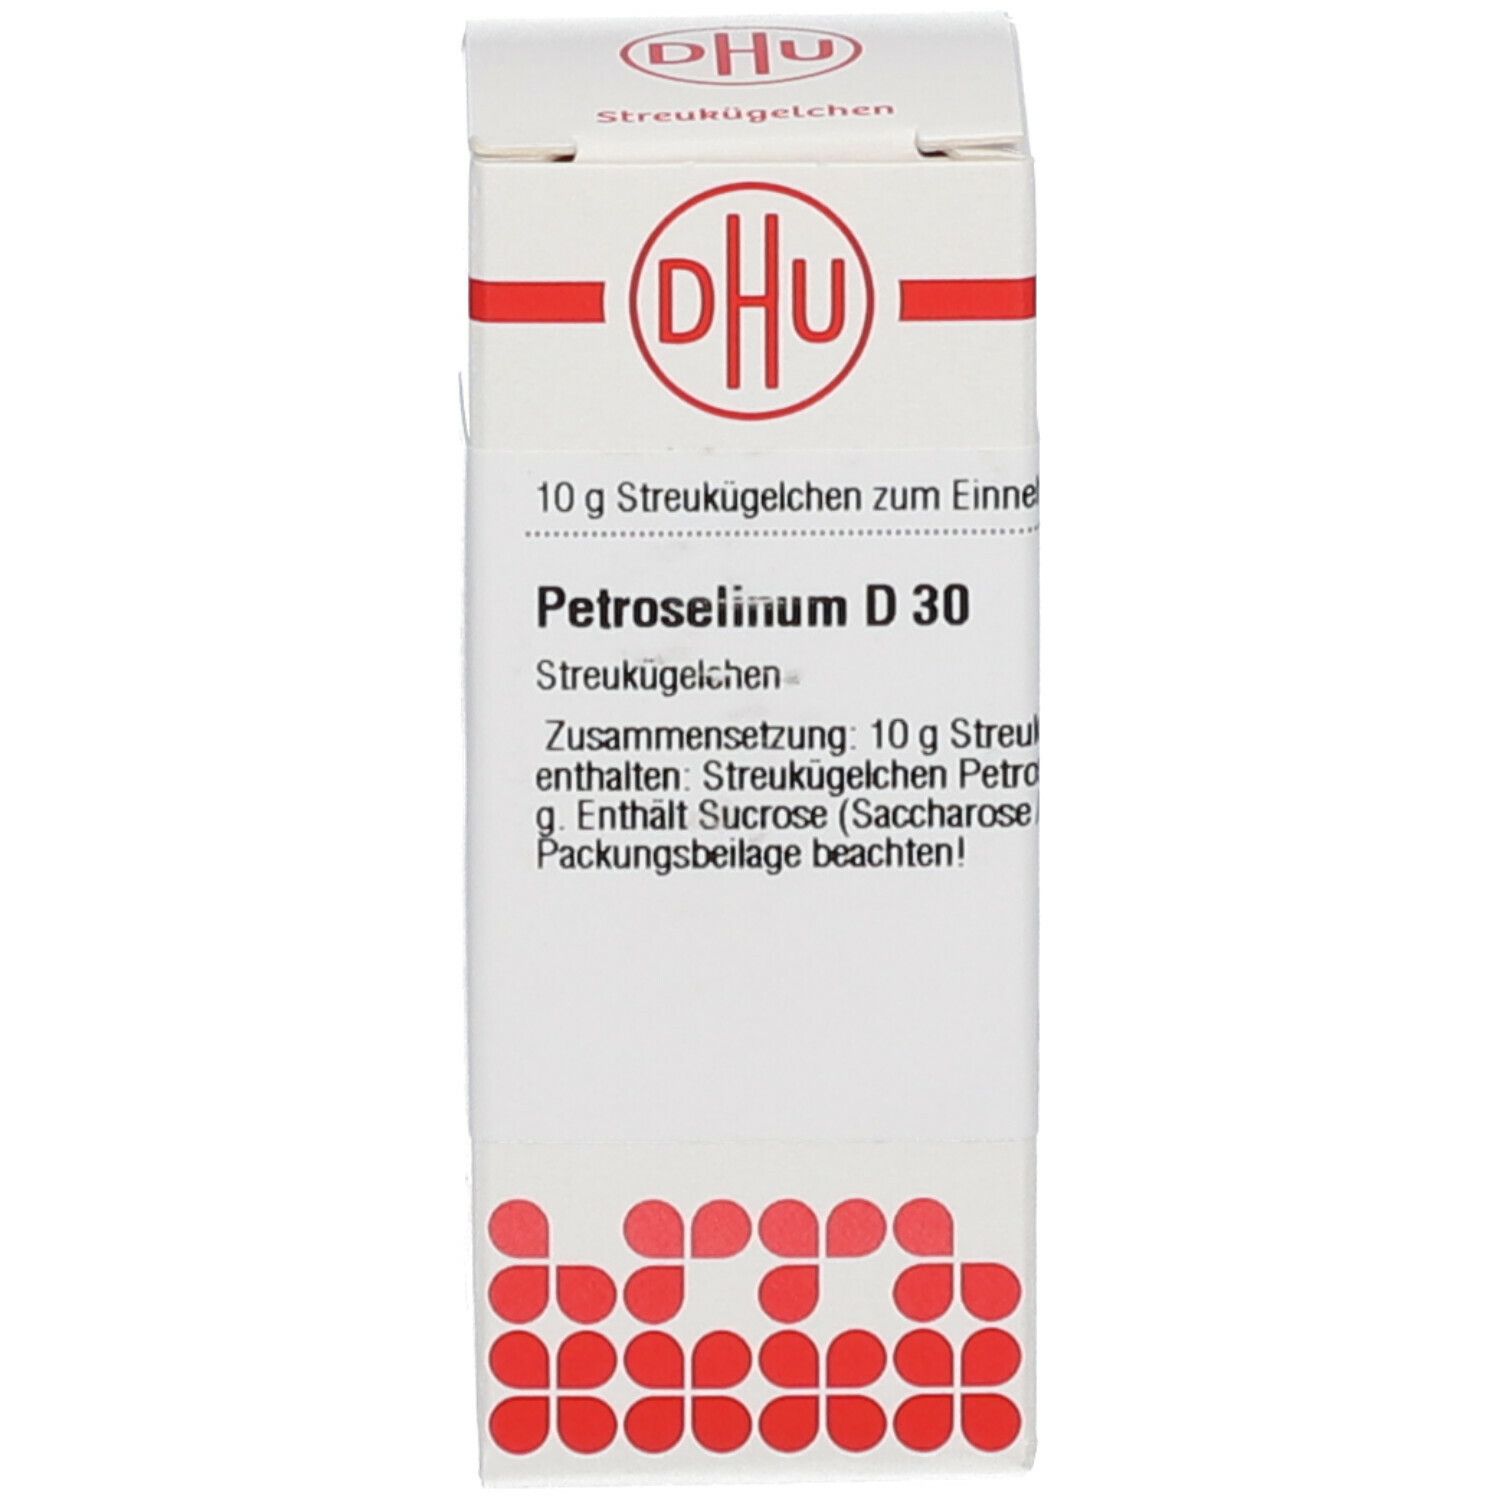 DHU Petroselenium D30